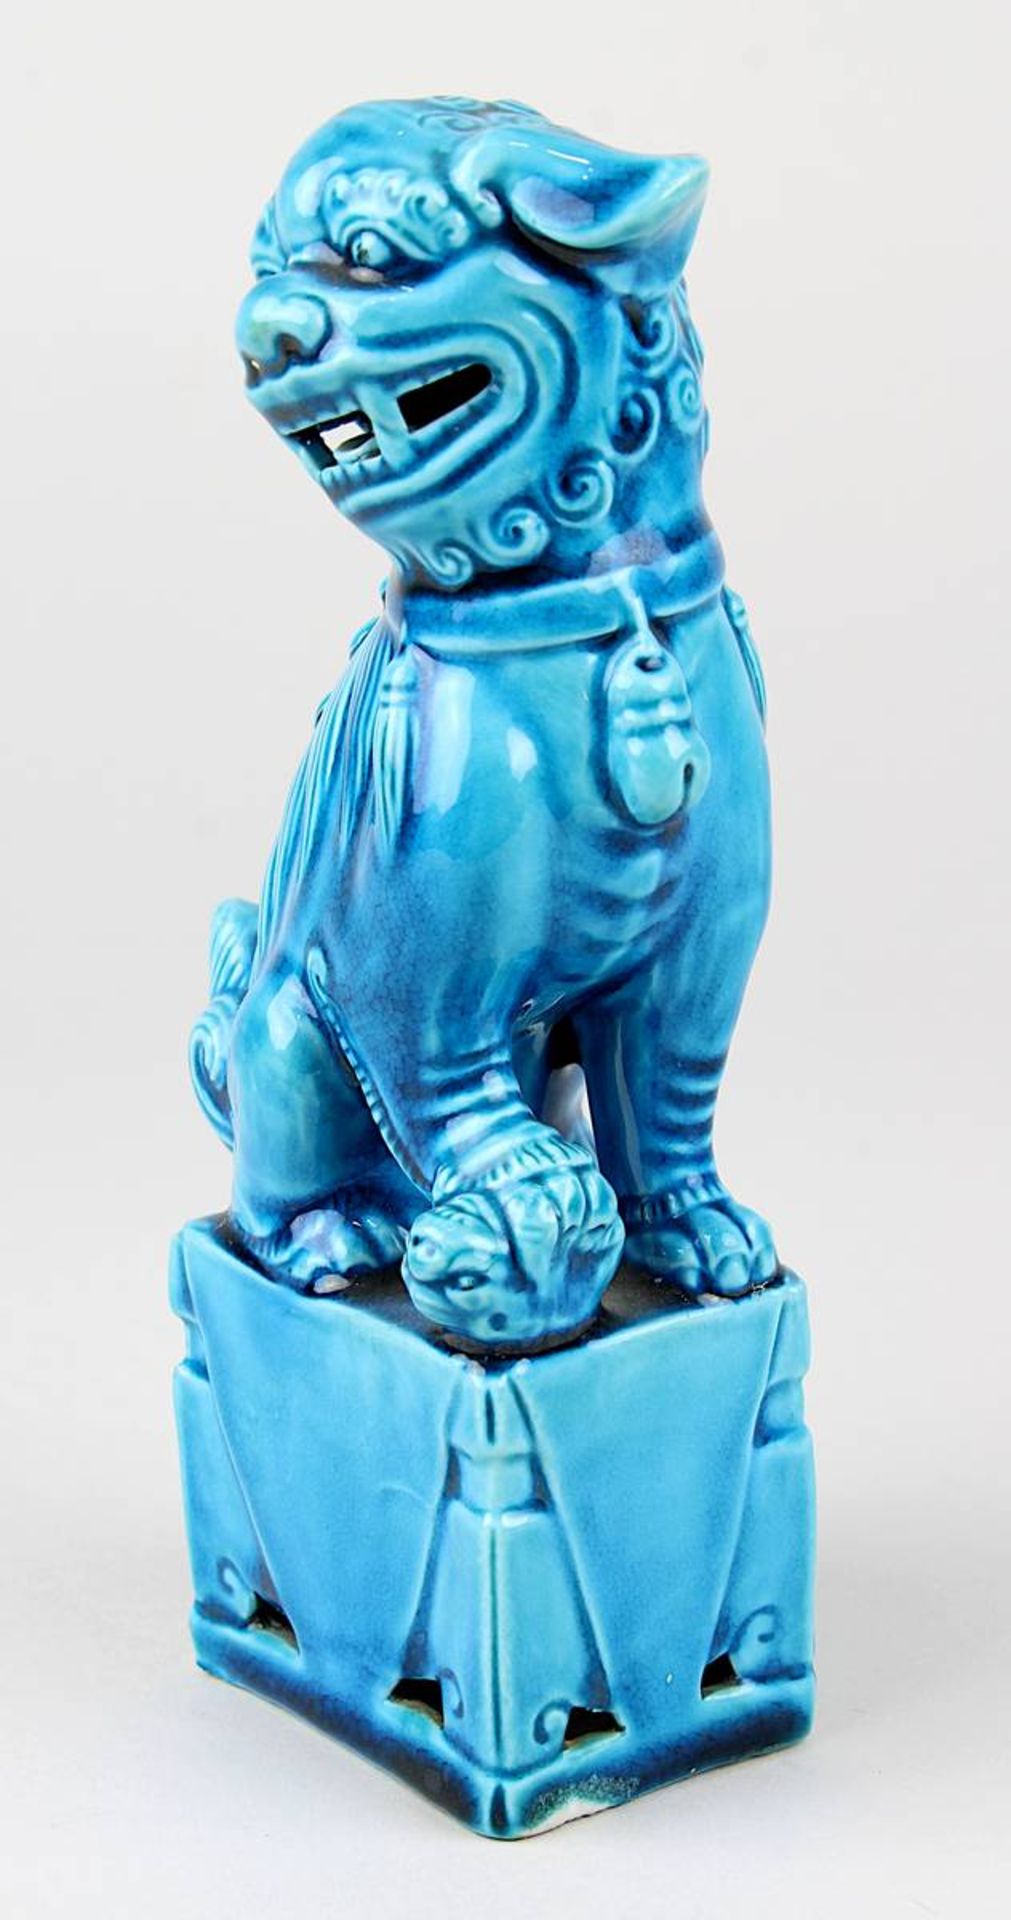 Kleiner Fo-Hund aus Porzellan, China 20. Jh., Porzellan, weißer Scherben, türkisblau glasiert, Höhe  - Bild 2 aus 4